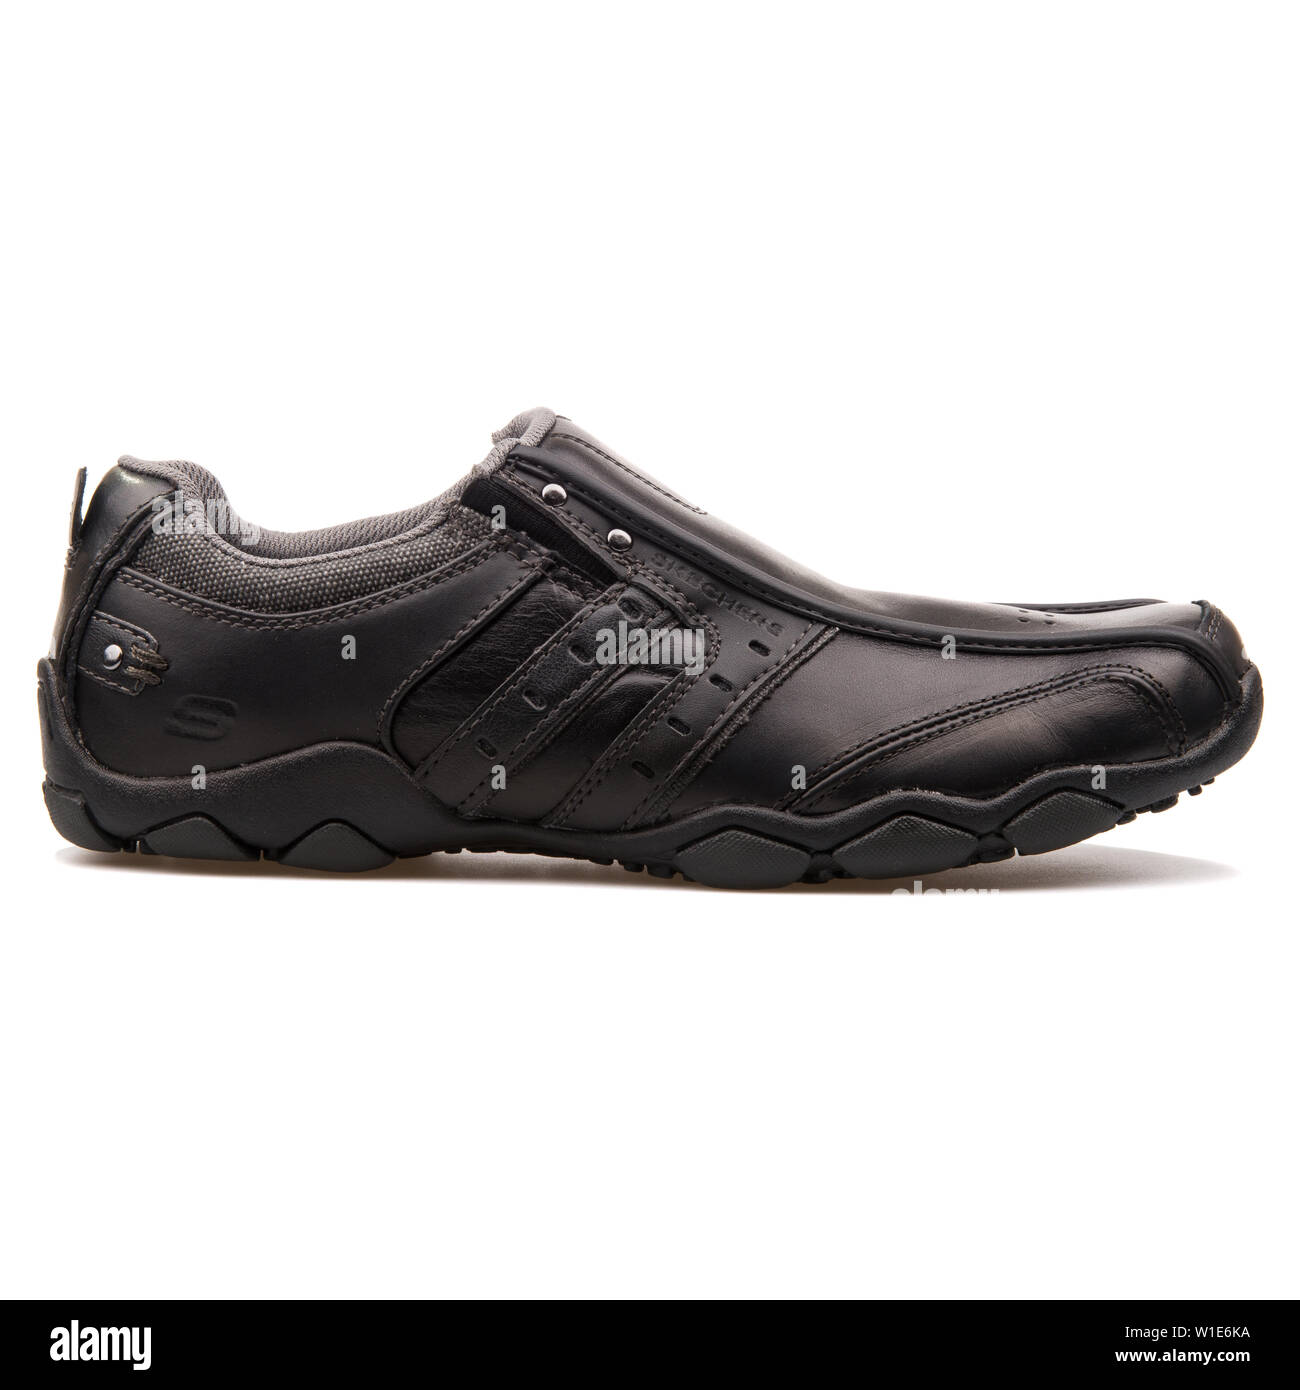 Verkleuren Ongemak Danser Black skechers shoes Cut Out Stock Images & Pictures - Alamy